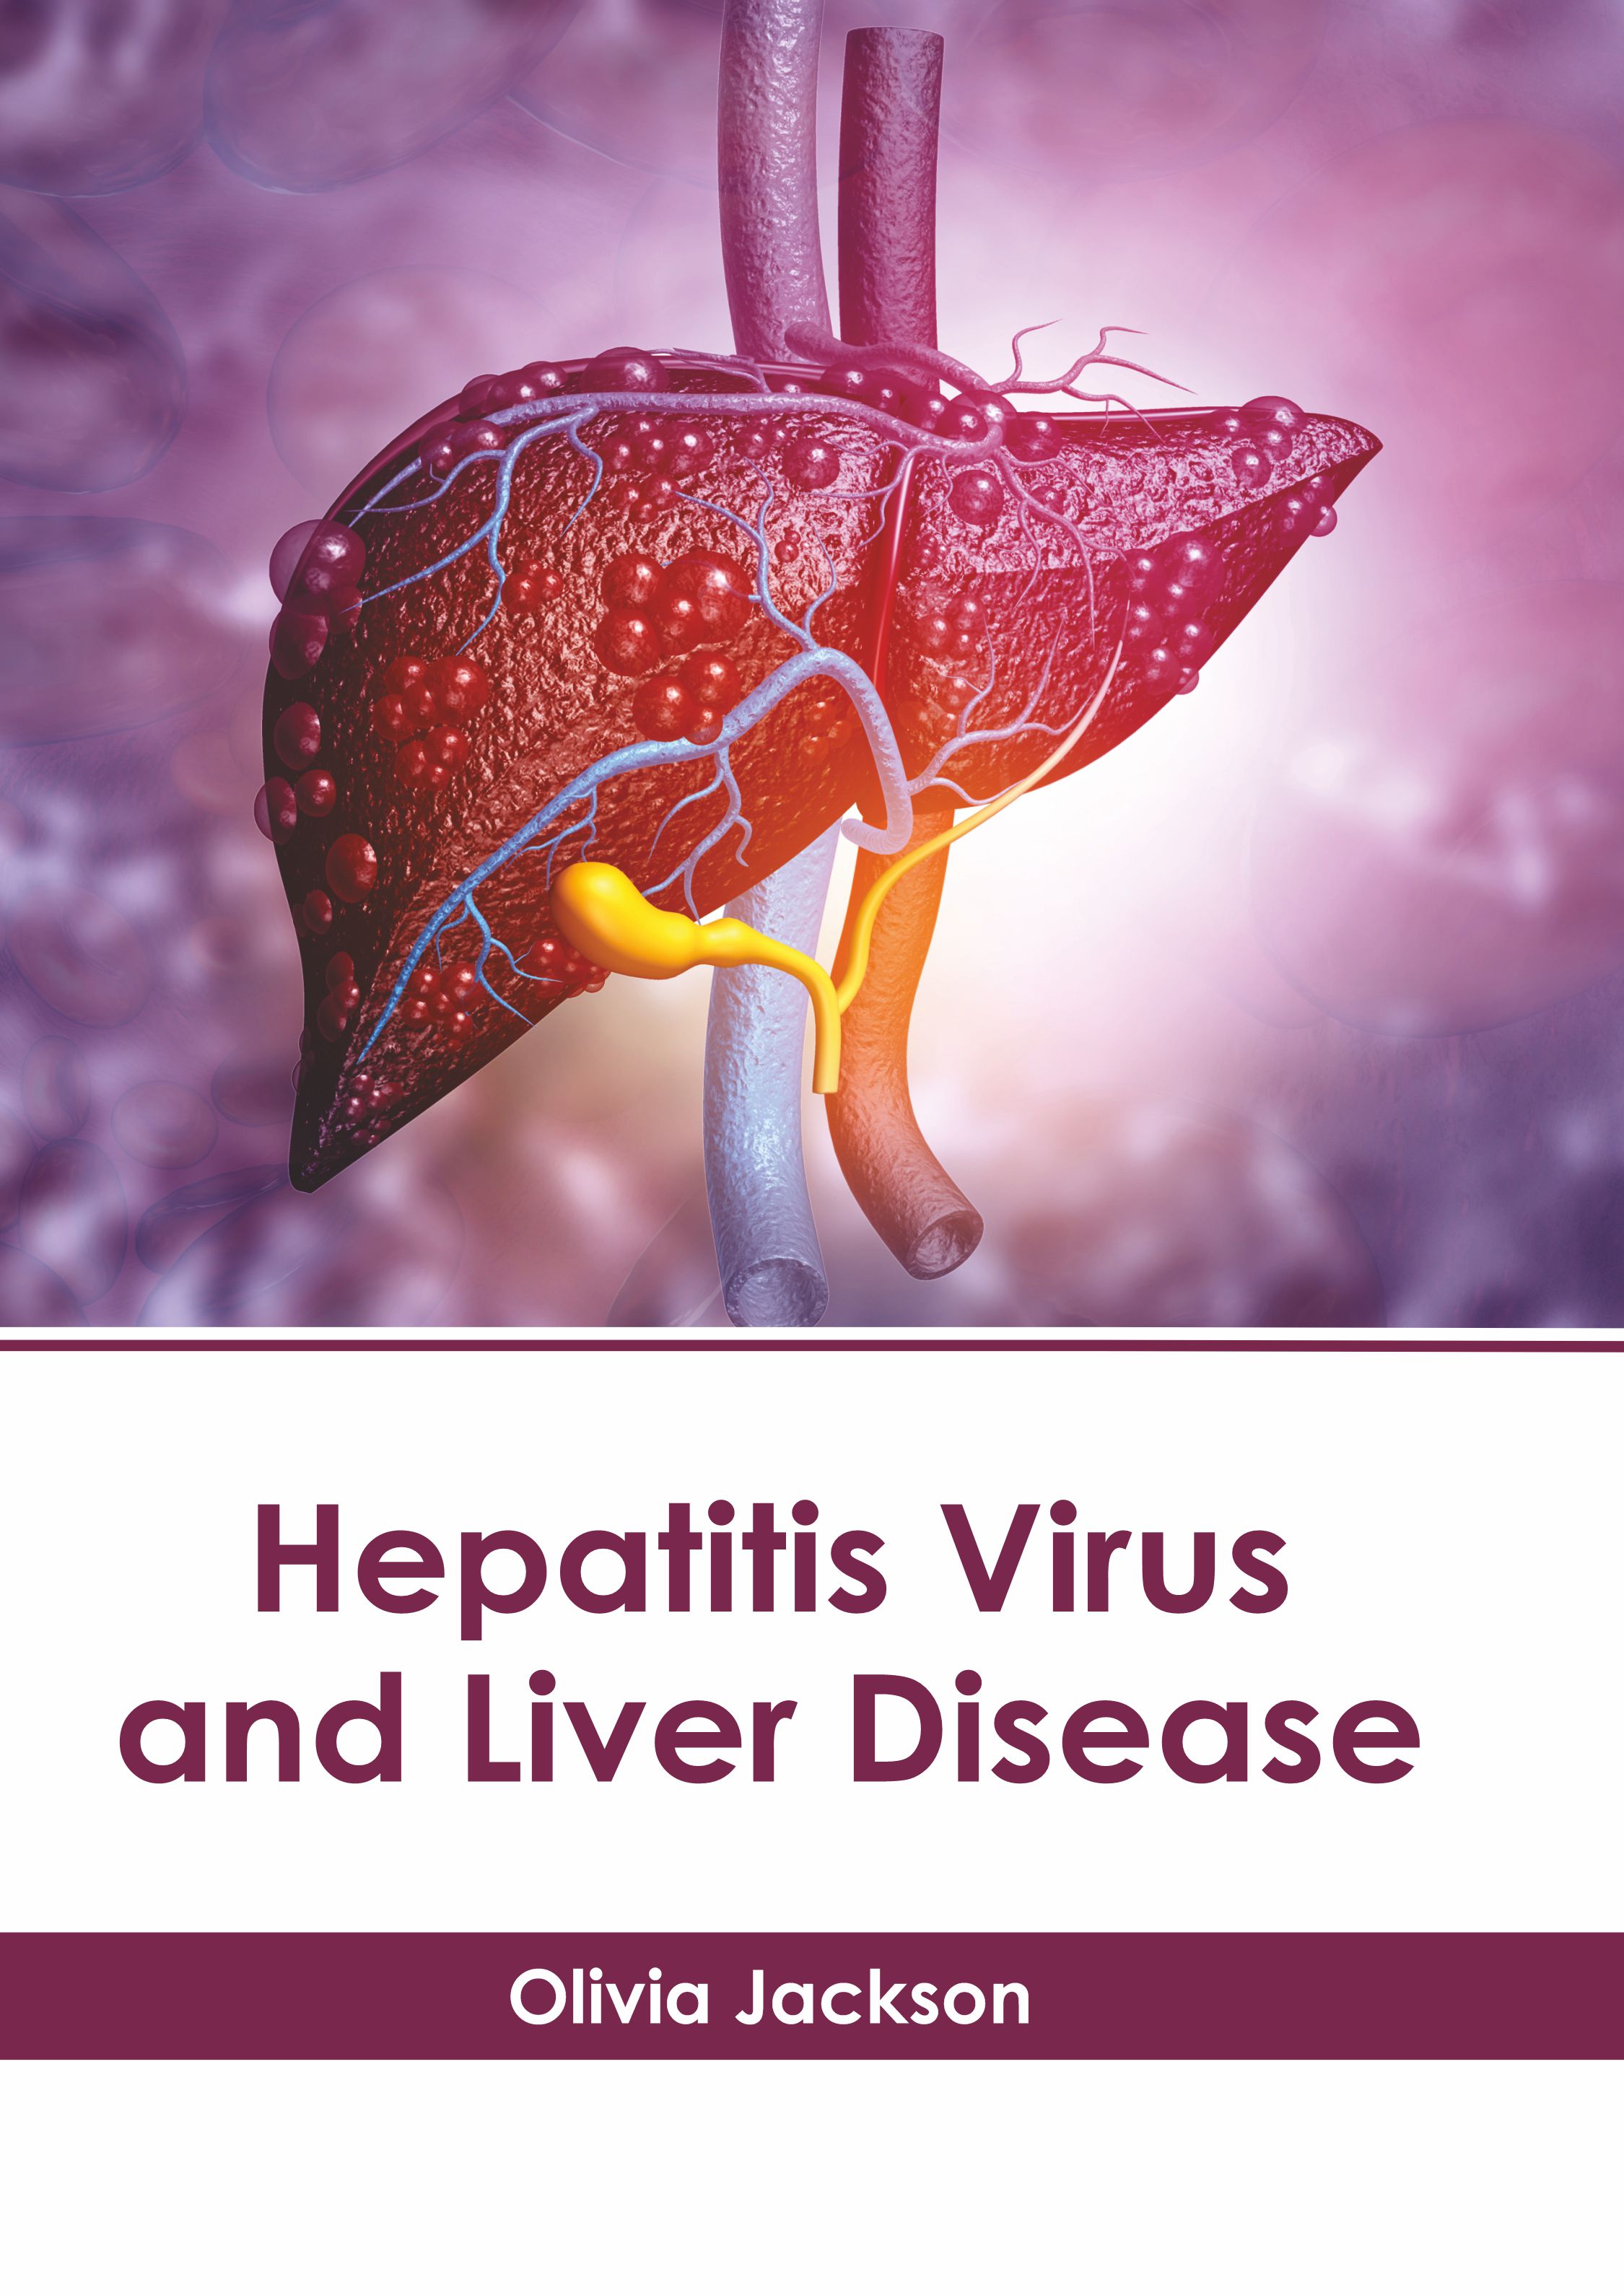 HEPATITIS VIRUS AND LIVER DISEASE